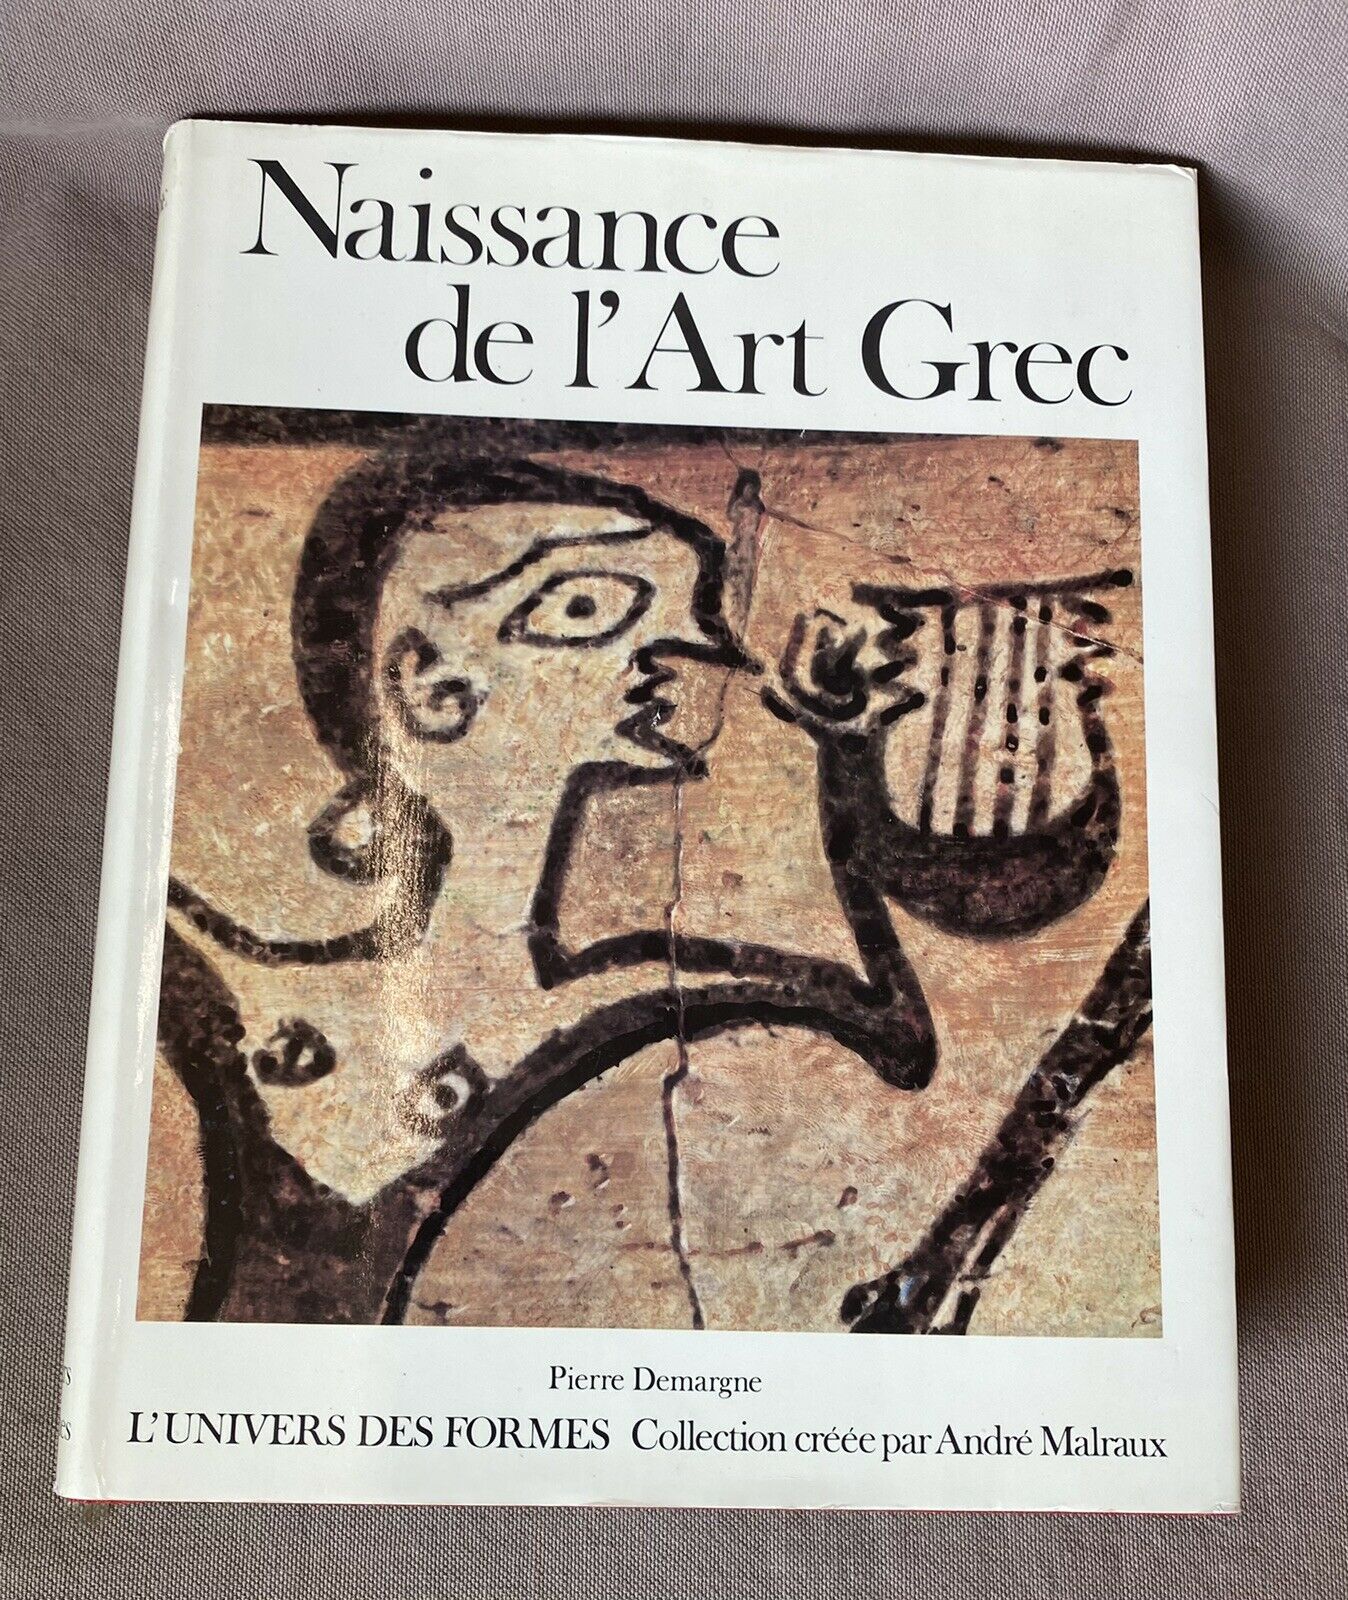 Featured image for “Naissance de l'art grec par Pierre Demargne / NRF GALLIMARD / André Malraux”